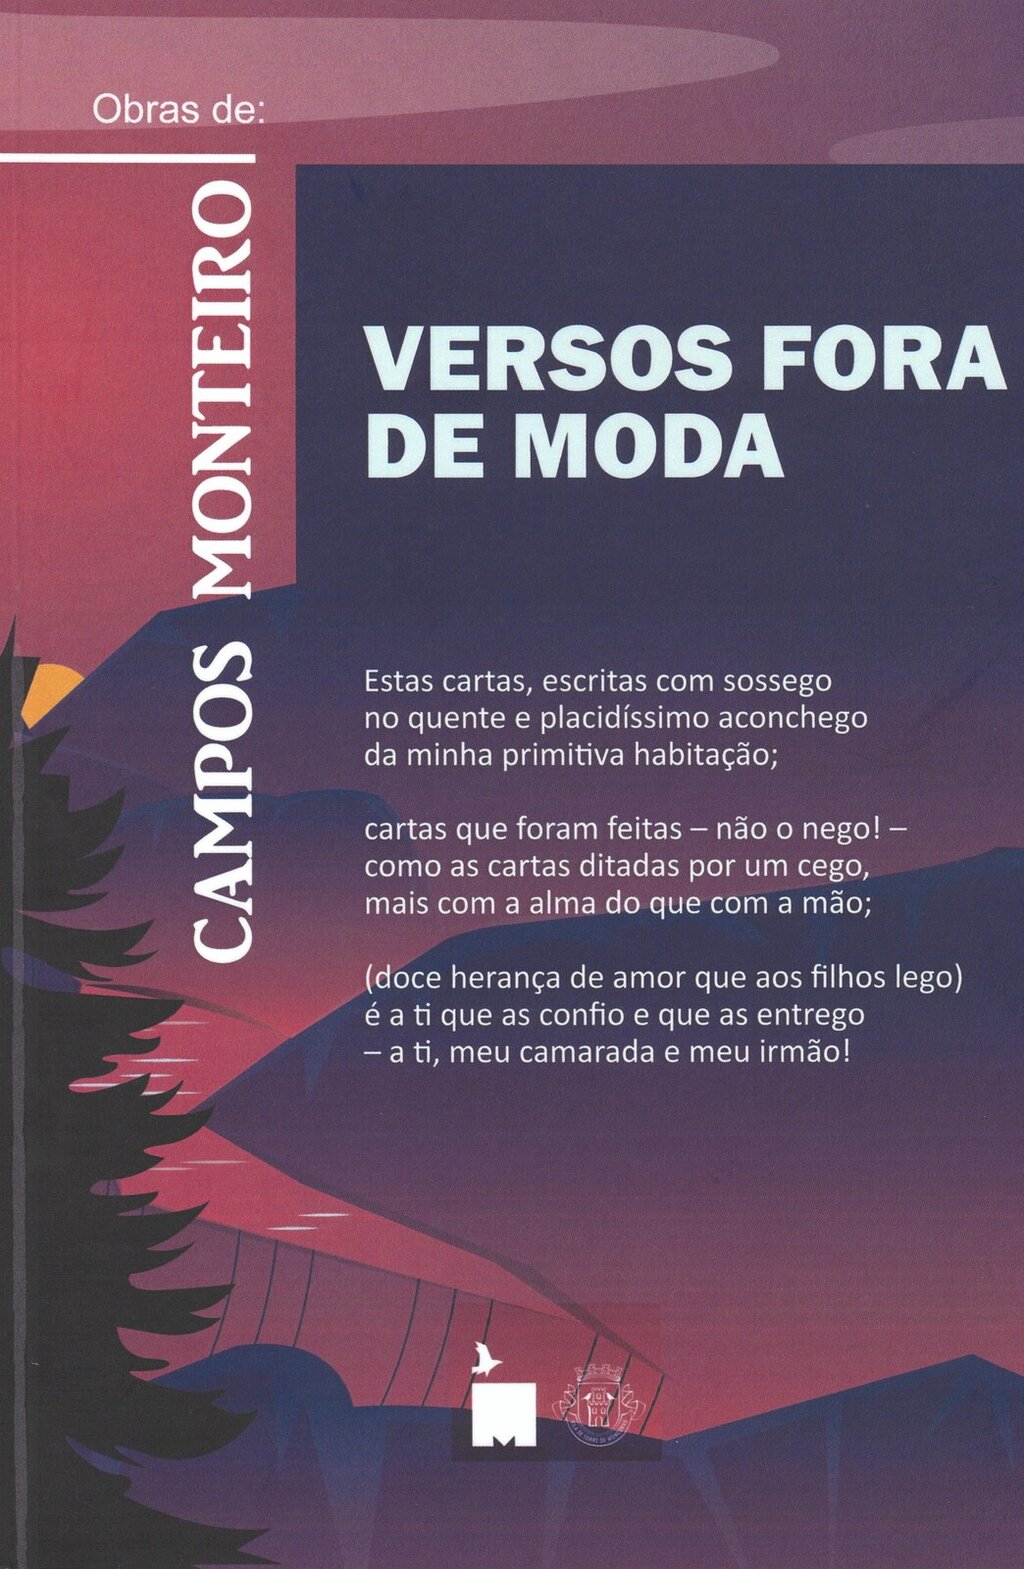 Apresentação do livro “Versos Fora de Moda” de Campos Monteiro e inauguração da exposição “Entre ...